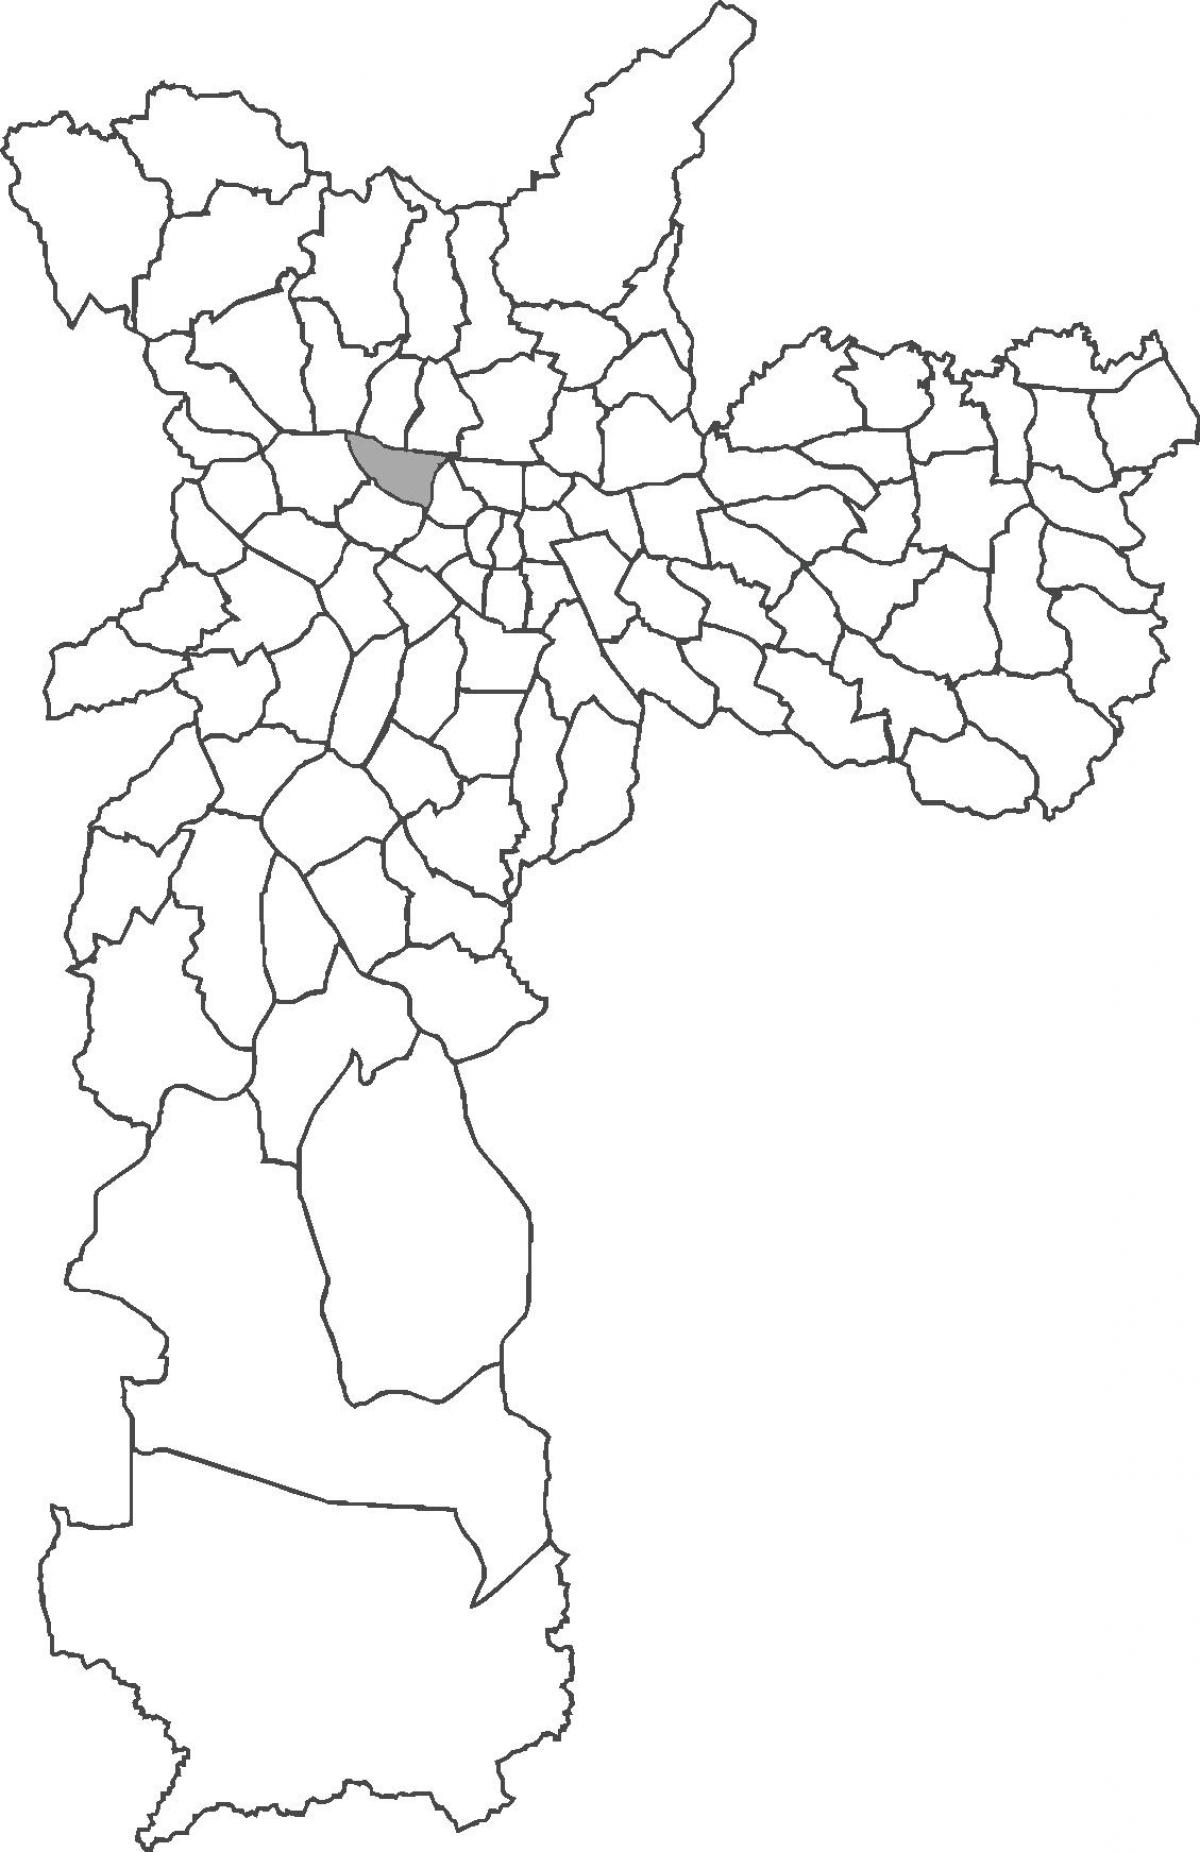 નકશો Barra Funda જિલ્લા